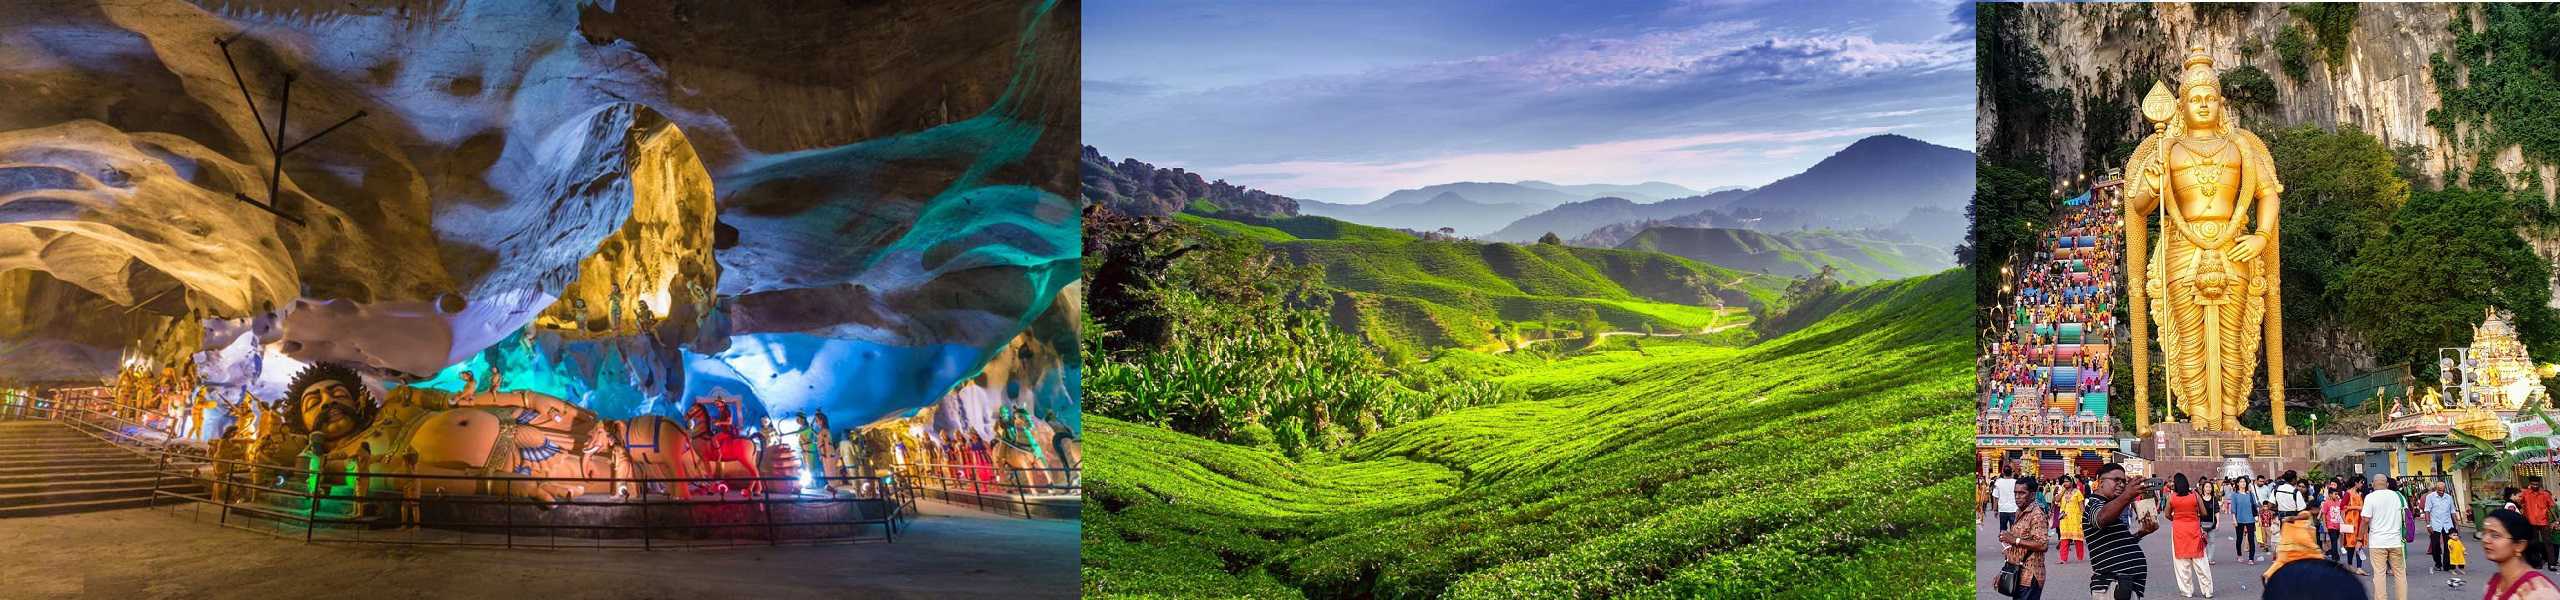 Địa điểm du lịch, tham quan cho người thích khám phá, mạo hiểm ở Malaysia